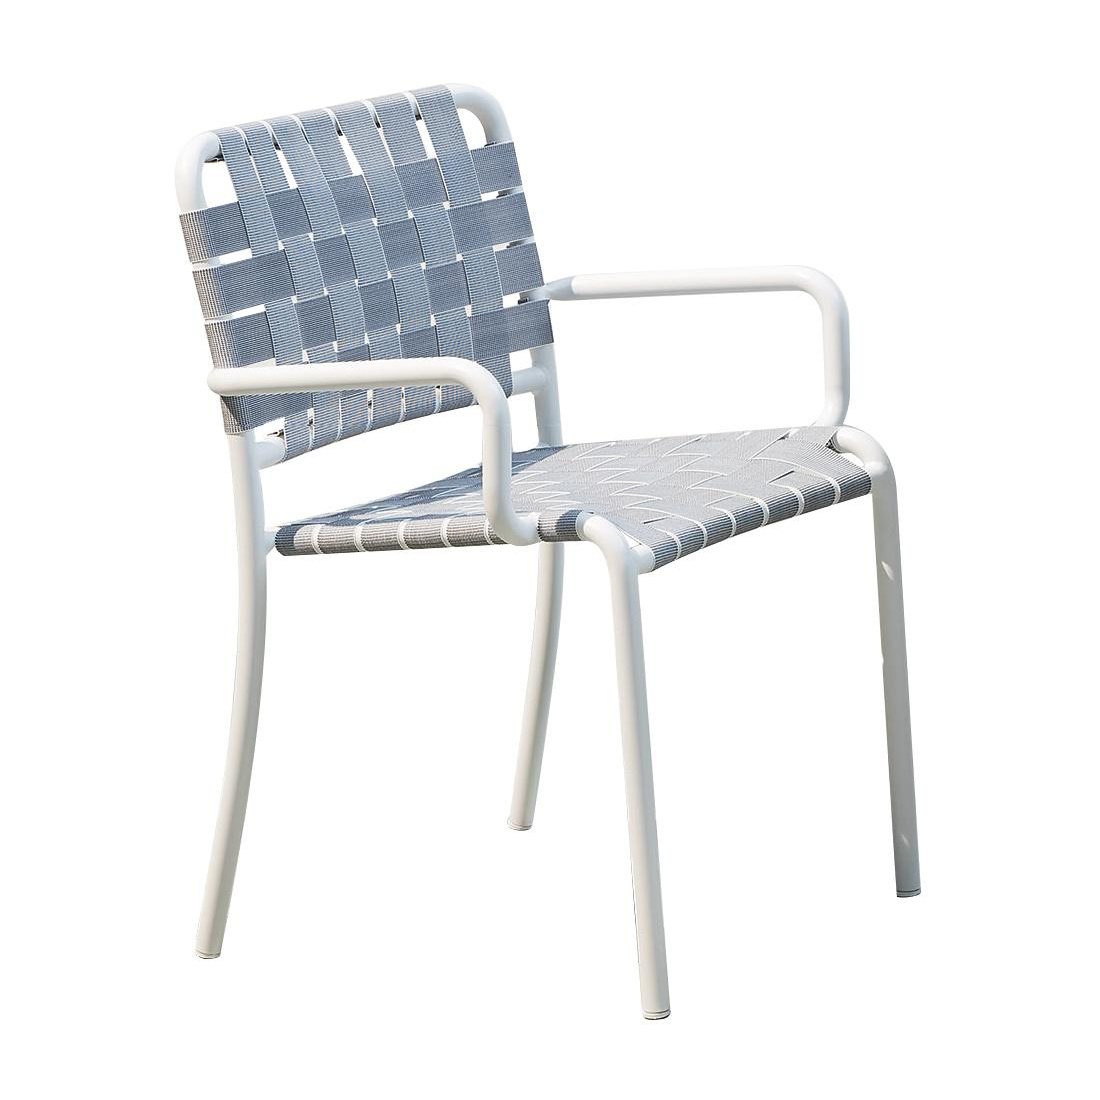 Gervasoni - Inout 824 Gartenarmlehnstuhl - weiß/grau/Sitzfläche aus elastischen Gurten/Gestell Aluminium weiß lackiert/BxHxT 59x80x58cm von Gervasoni